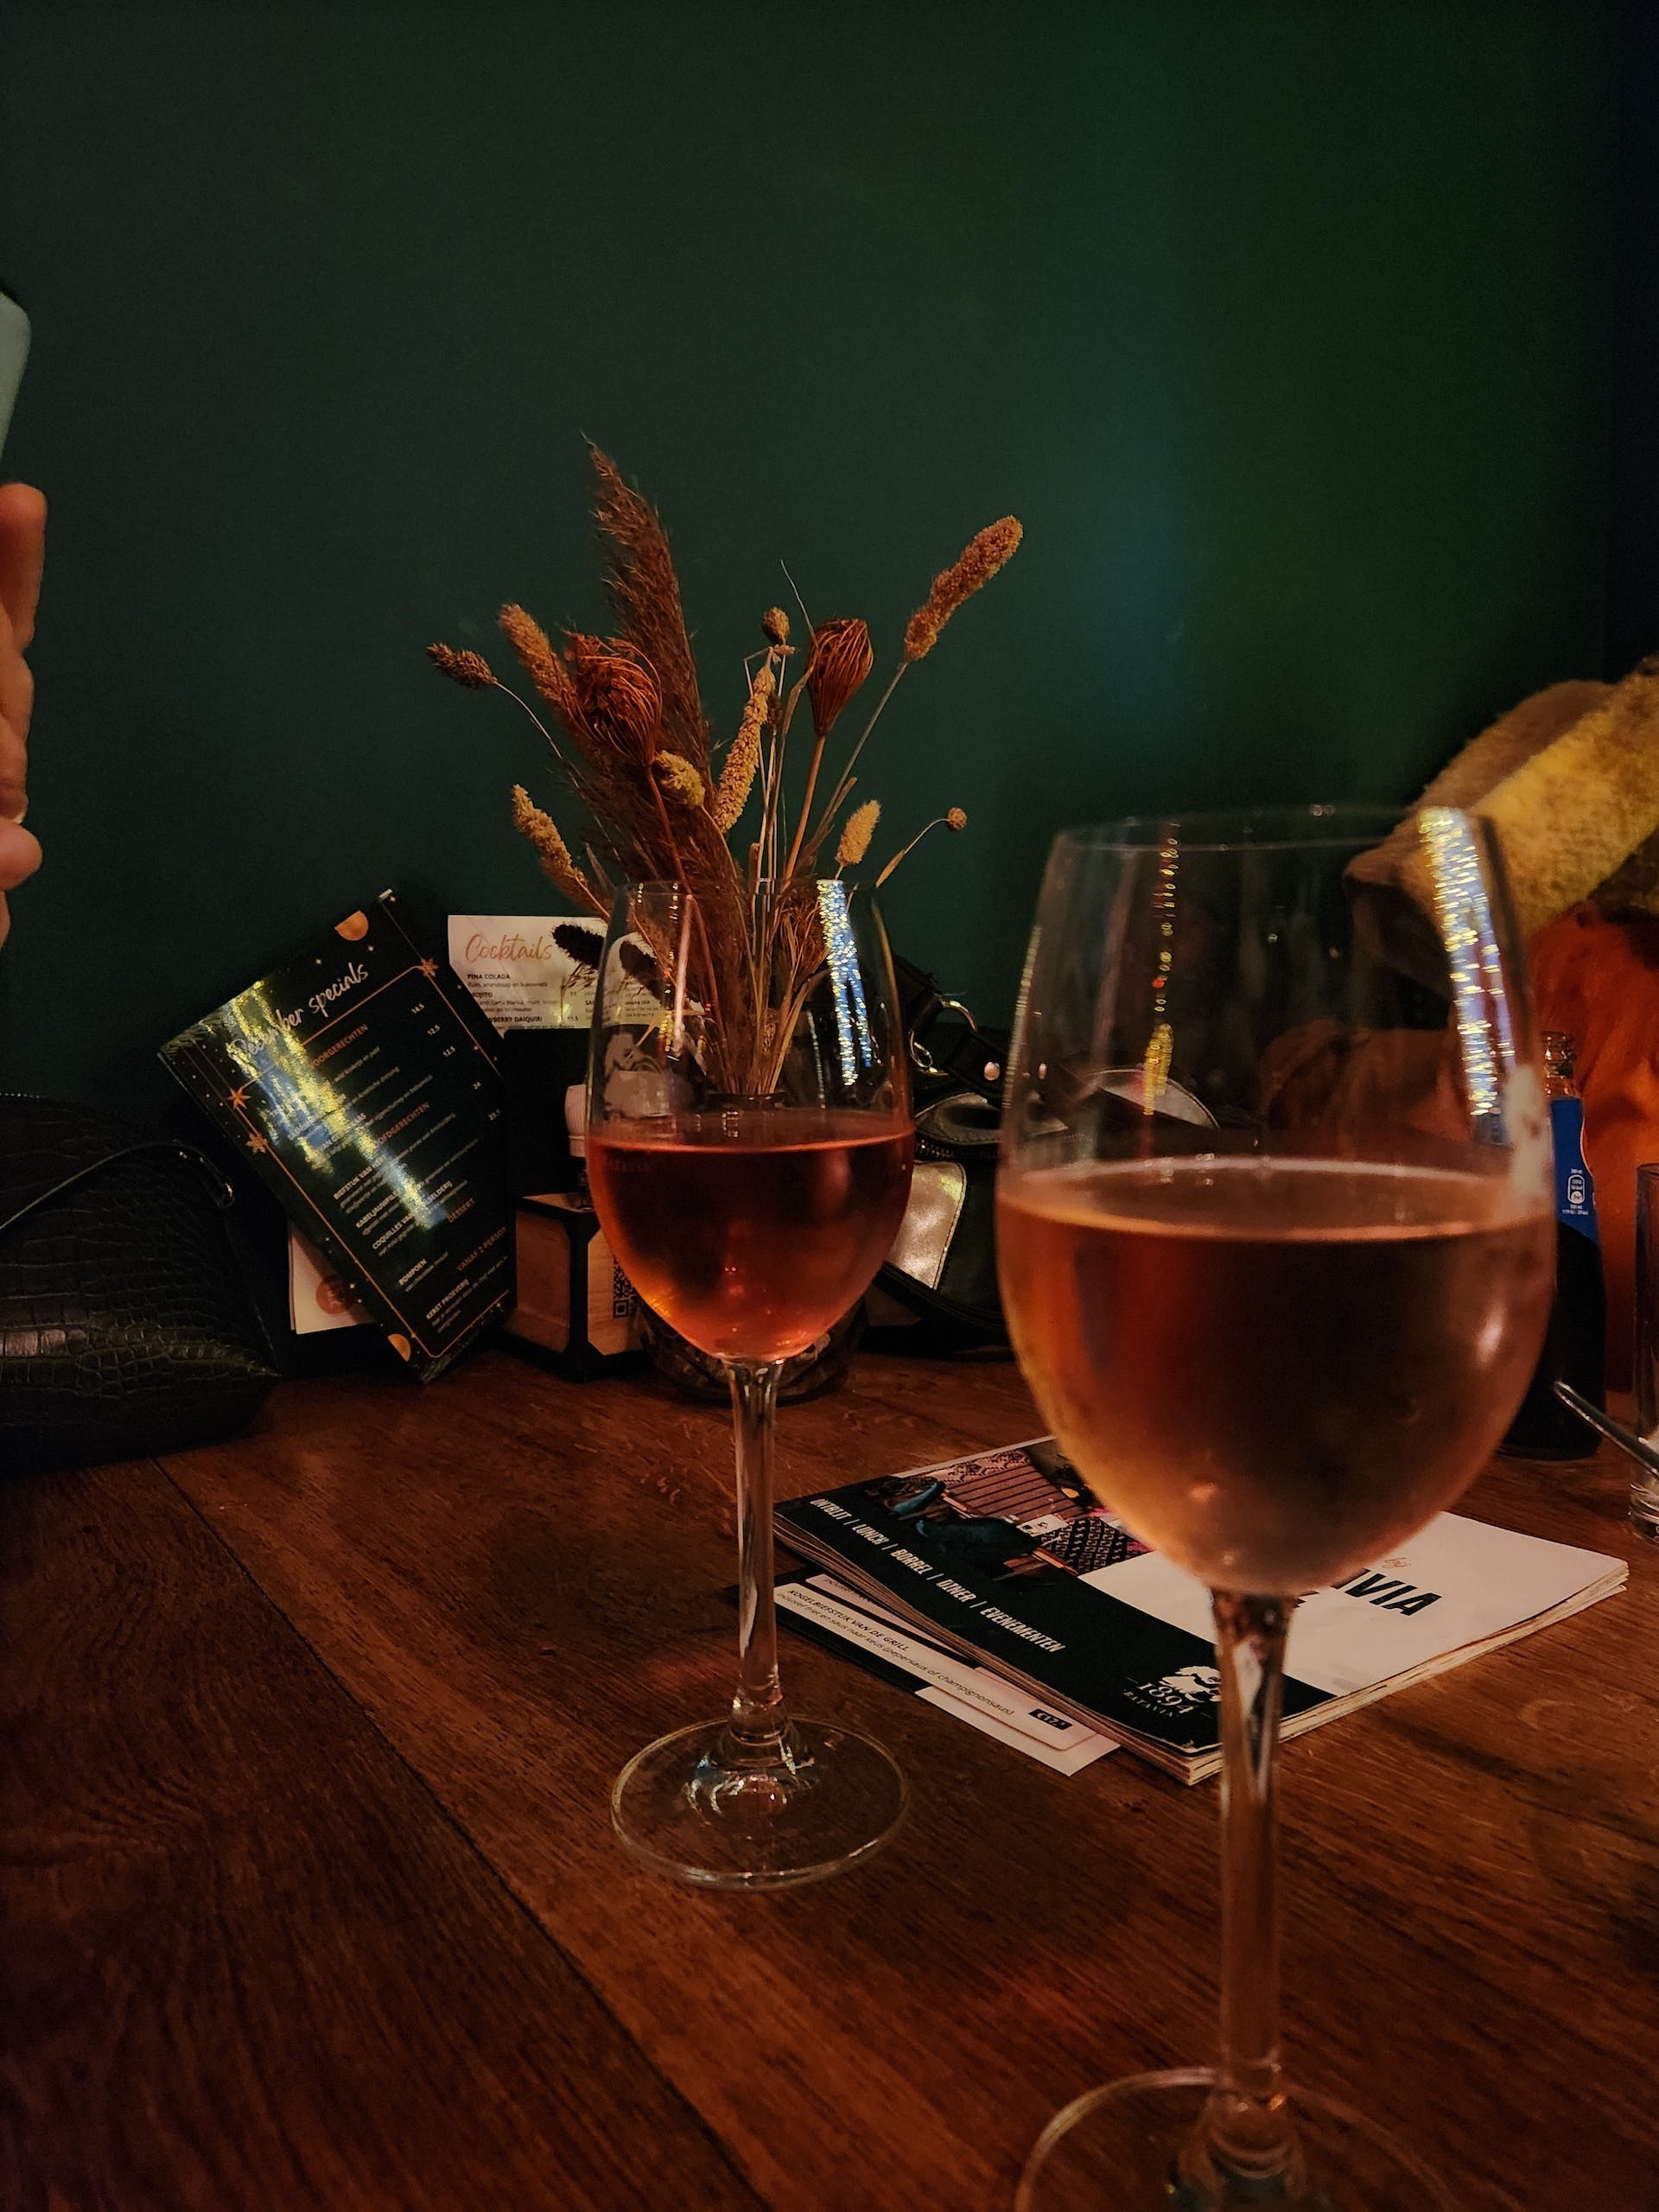 Weingläser auf dem Tisch | Quelle: Pexels